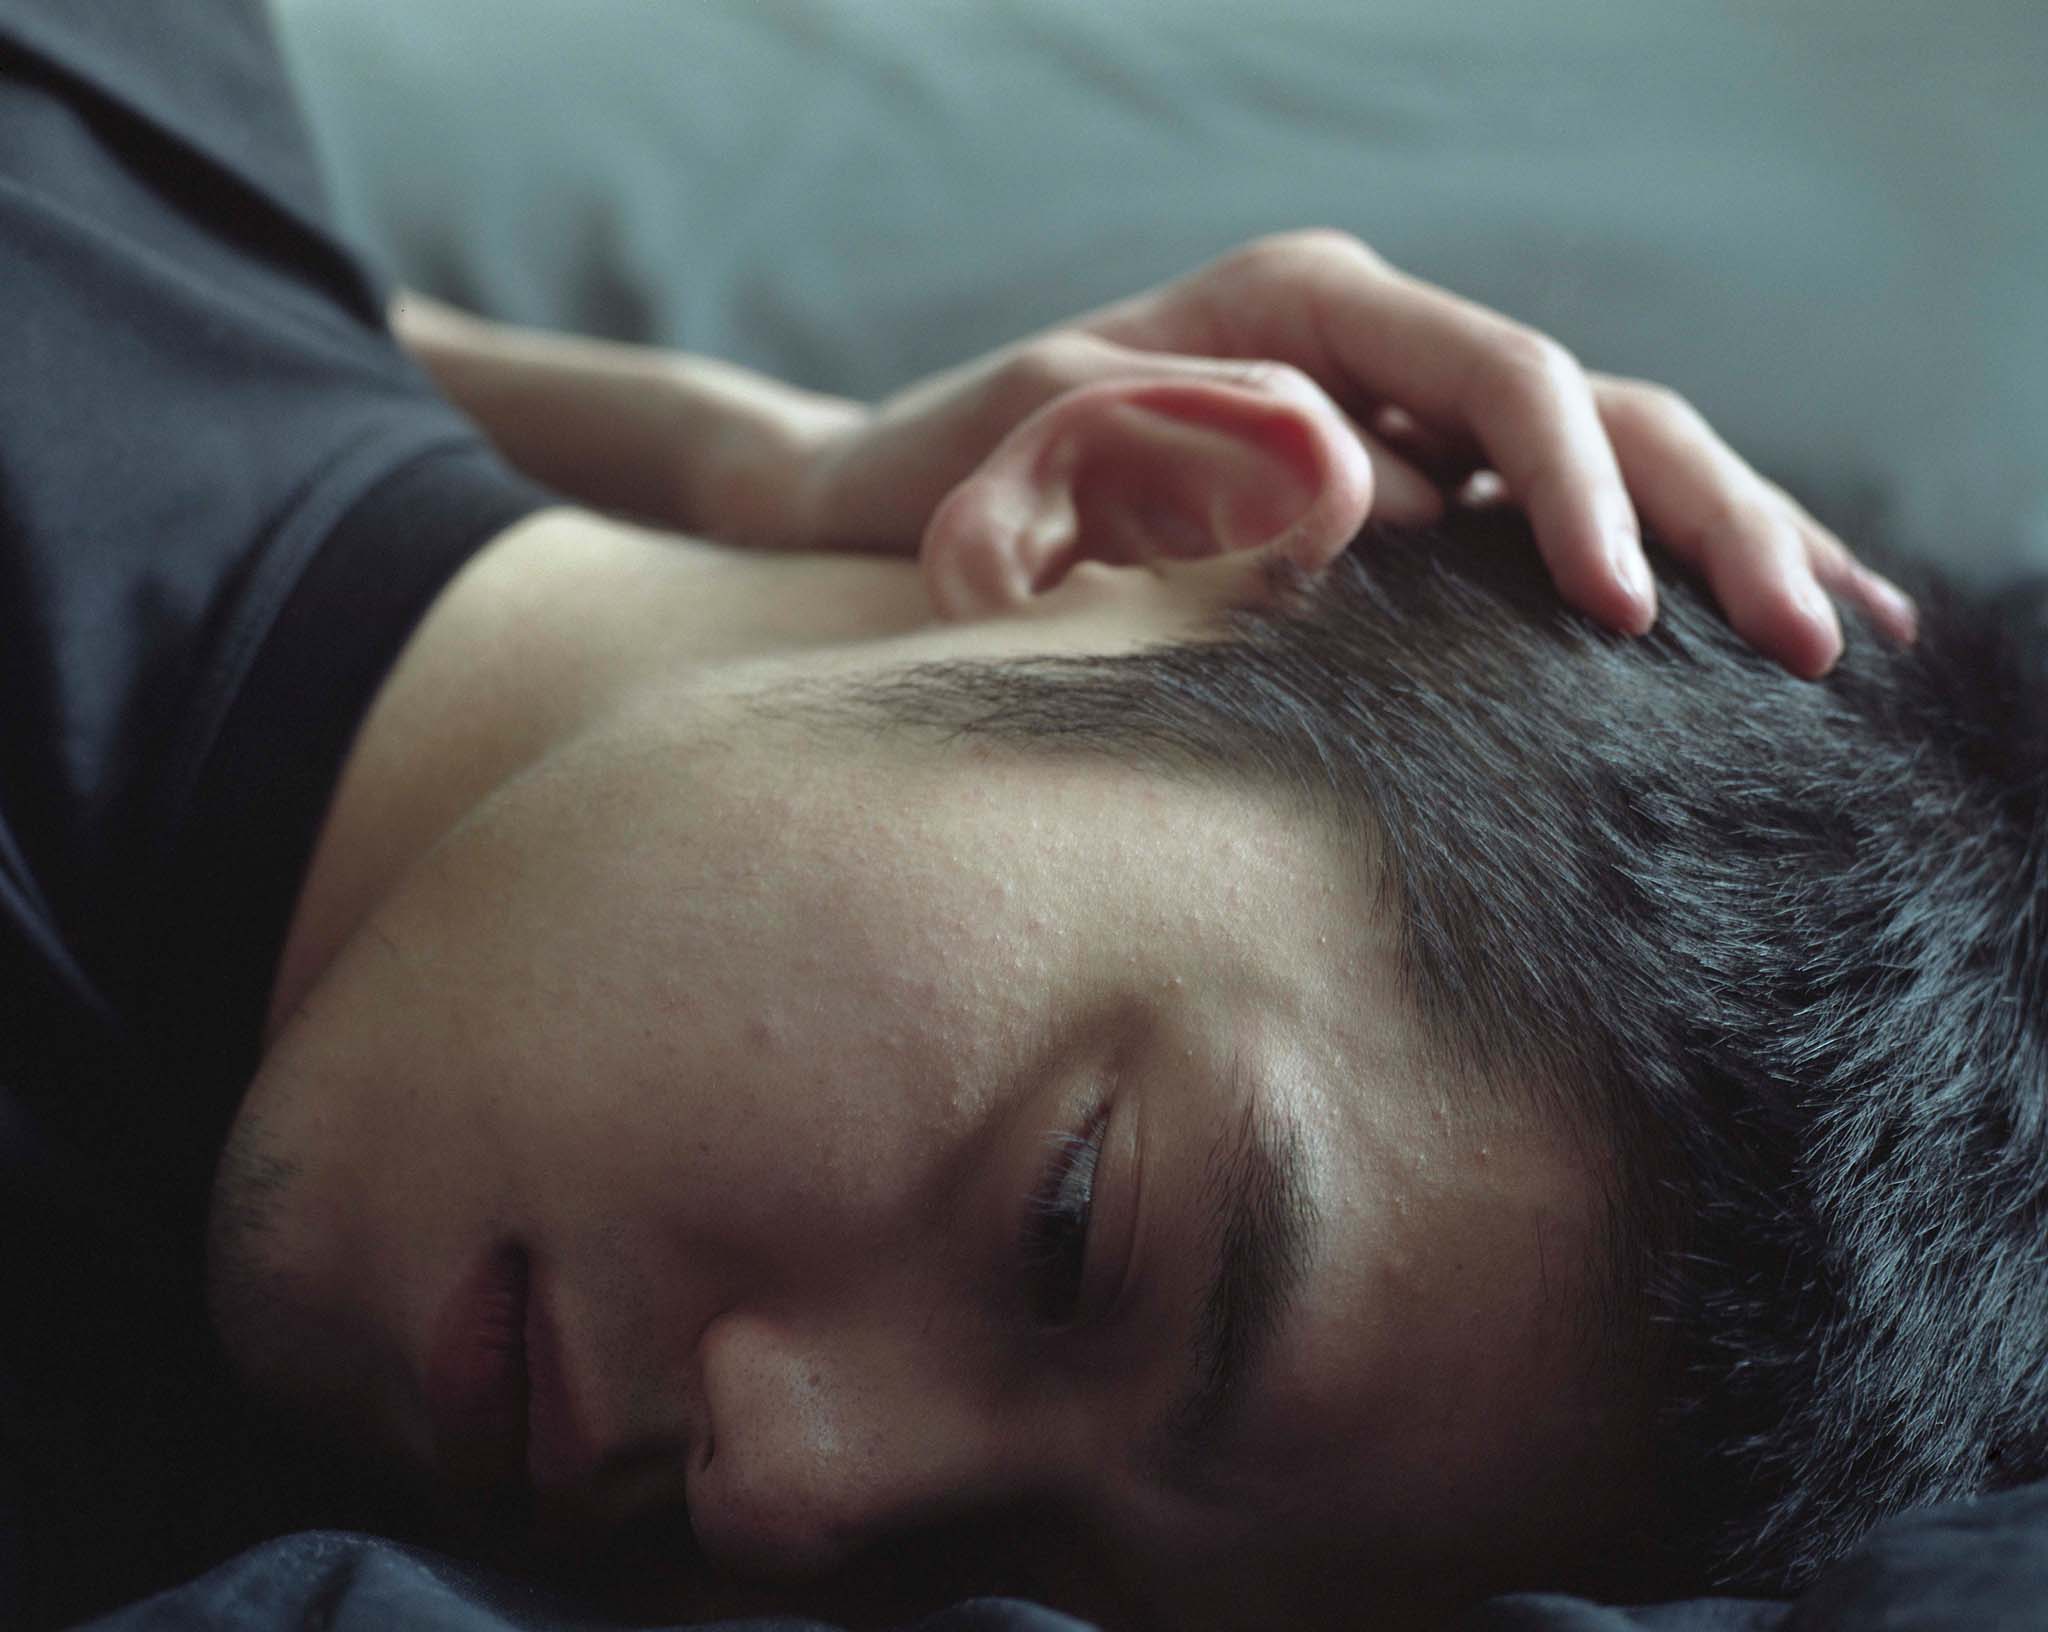 [Tuần này xem ảnh của ai?] Cảm xúc và nỗi buồn trong nhiếp ảnh của Bowei Yang